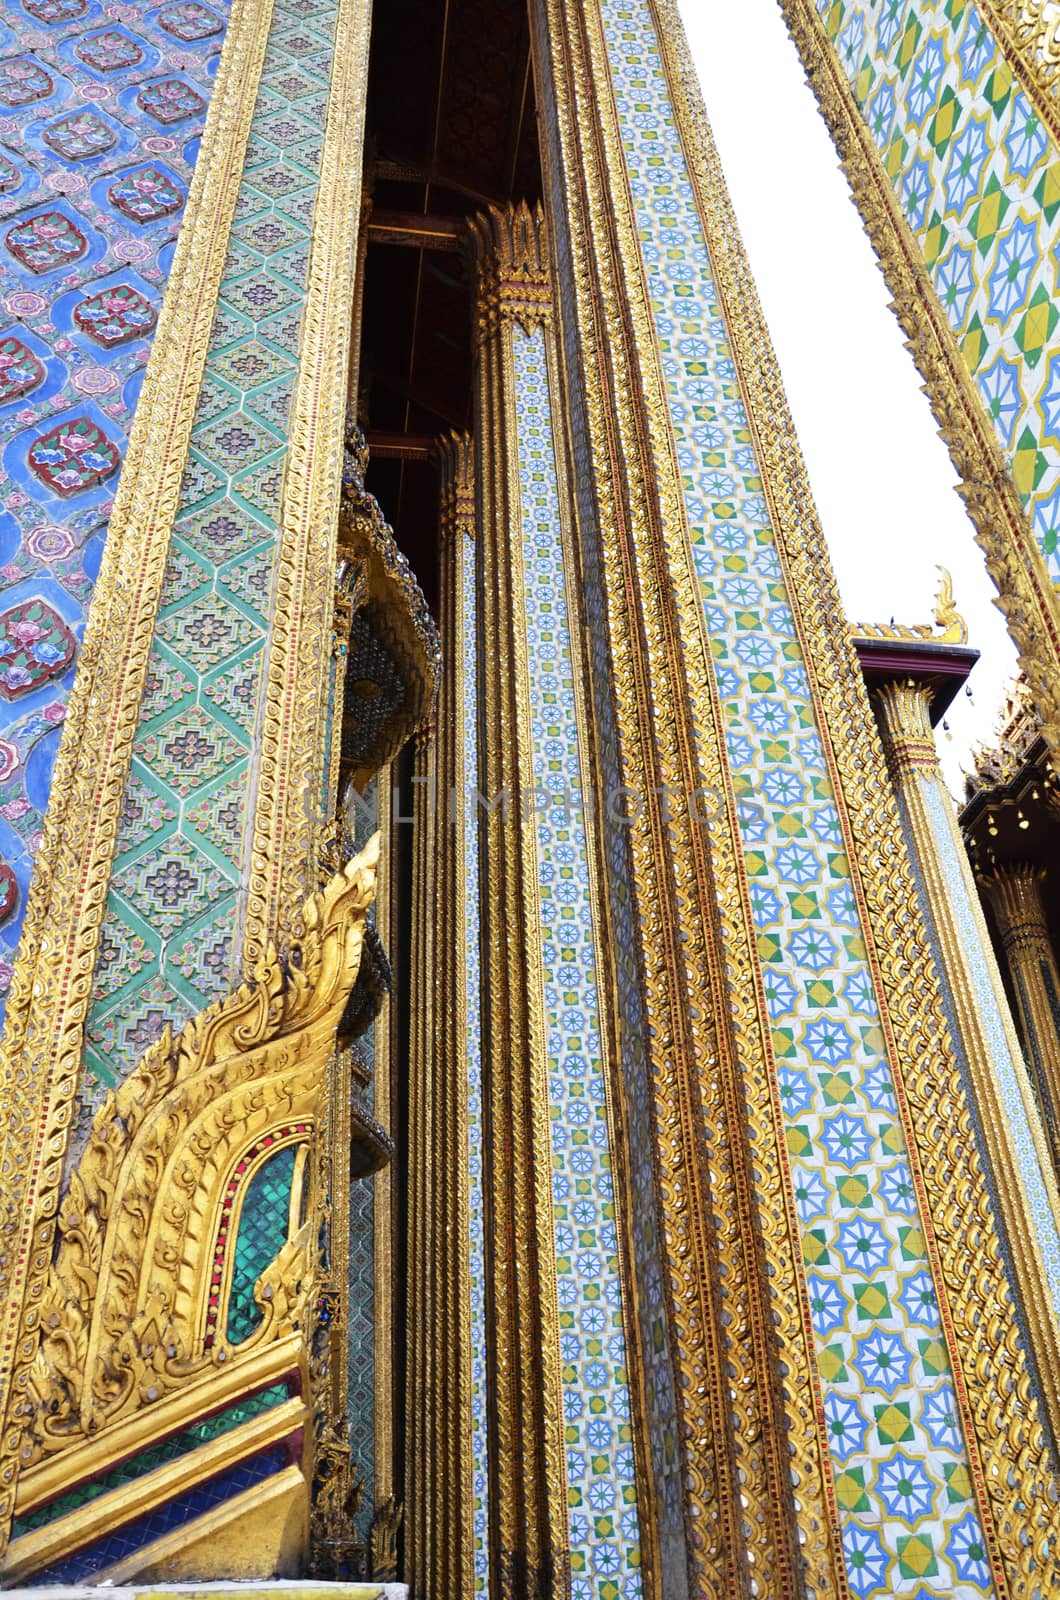 Golden pagoda in Grand Palace, Bangkok by tang90246